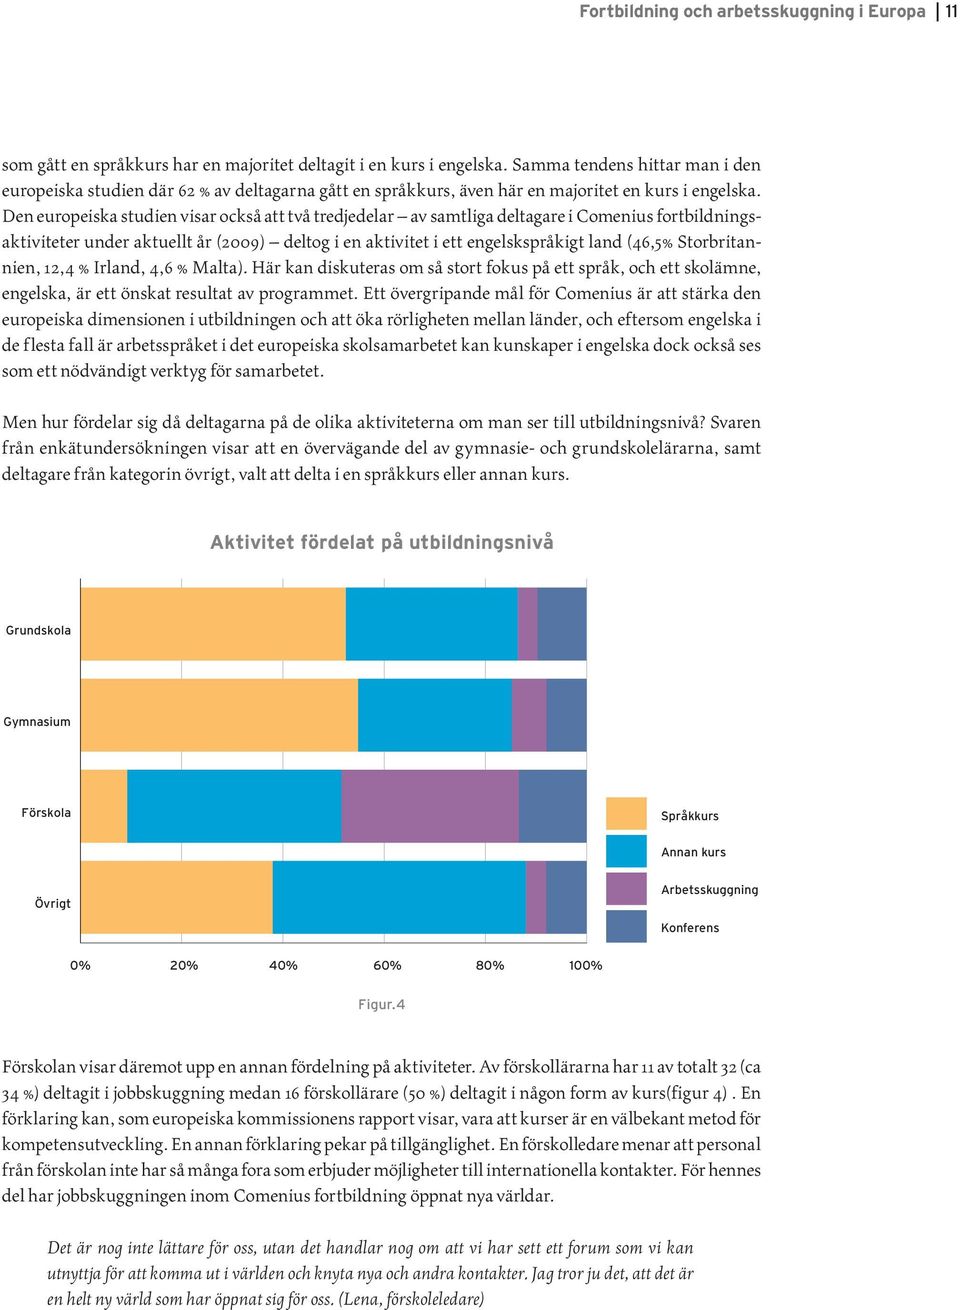 Den europeiska studien visar också att två tredjedelar av samtliga deltagare i Comenius fortbildningsaktiviteter under aktuellt år (2009) deltog i en aktivitet i ett engelskspråkigt land (46,5%